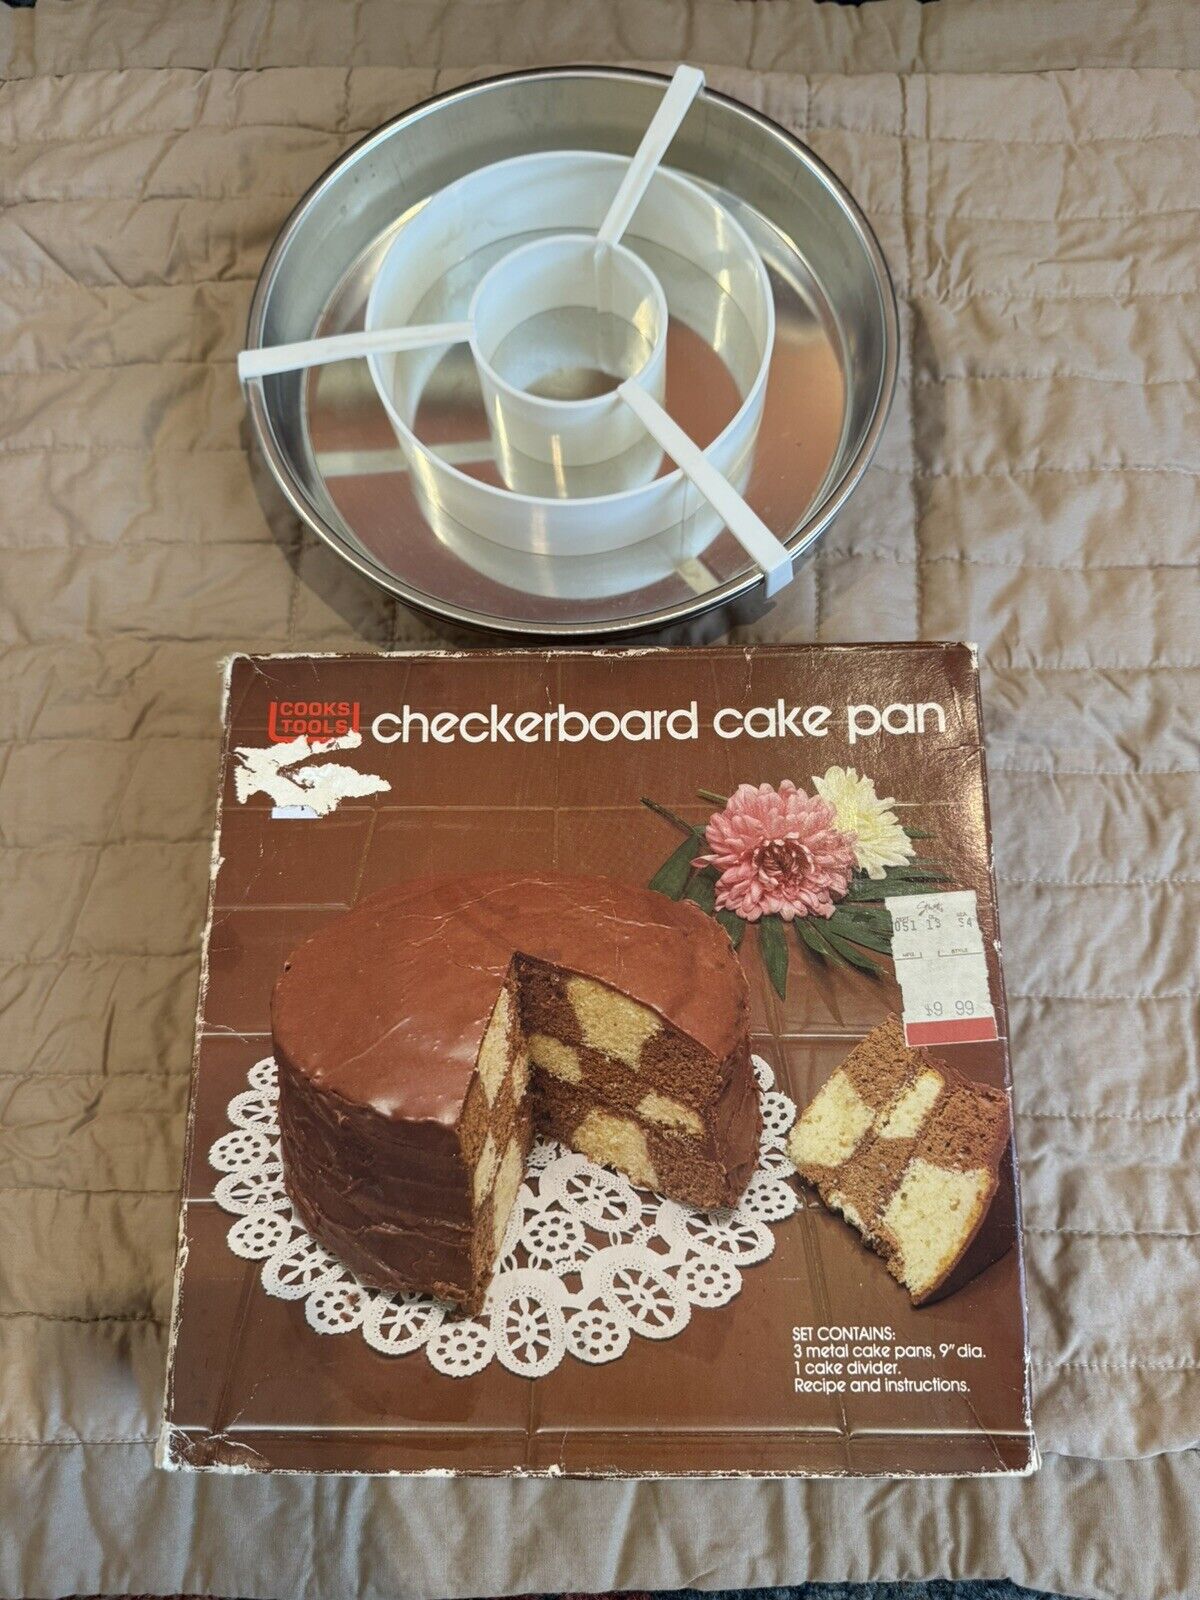 Cooks Tools Checkerboard Cake Pan in original box